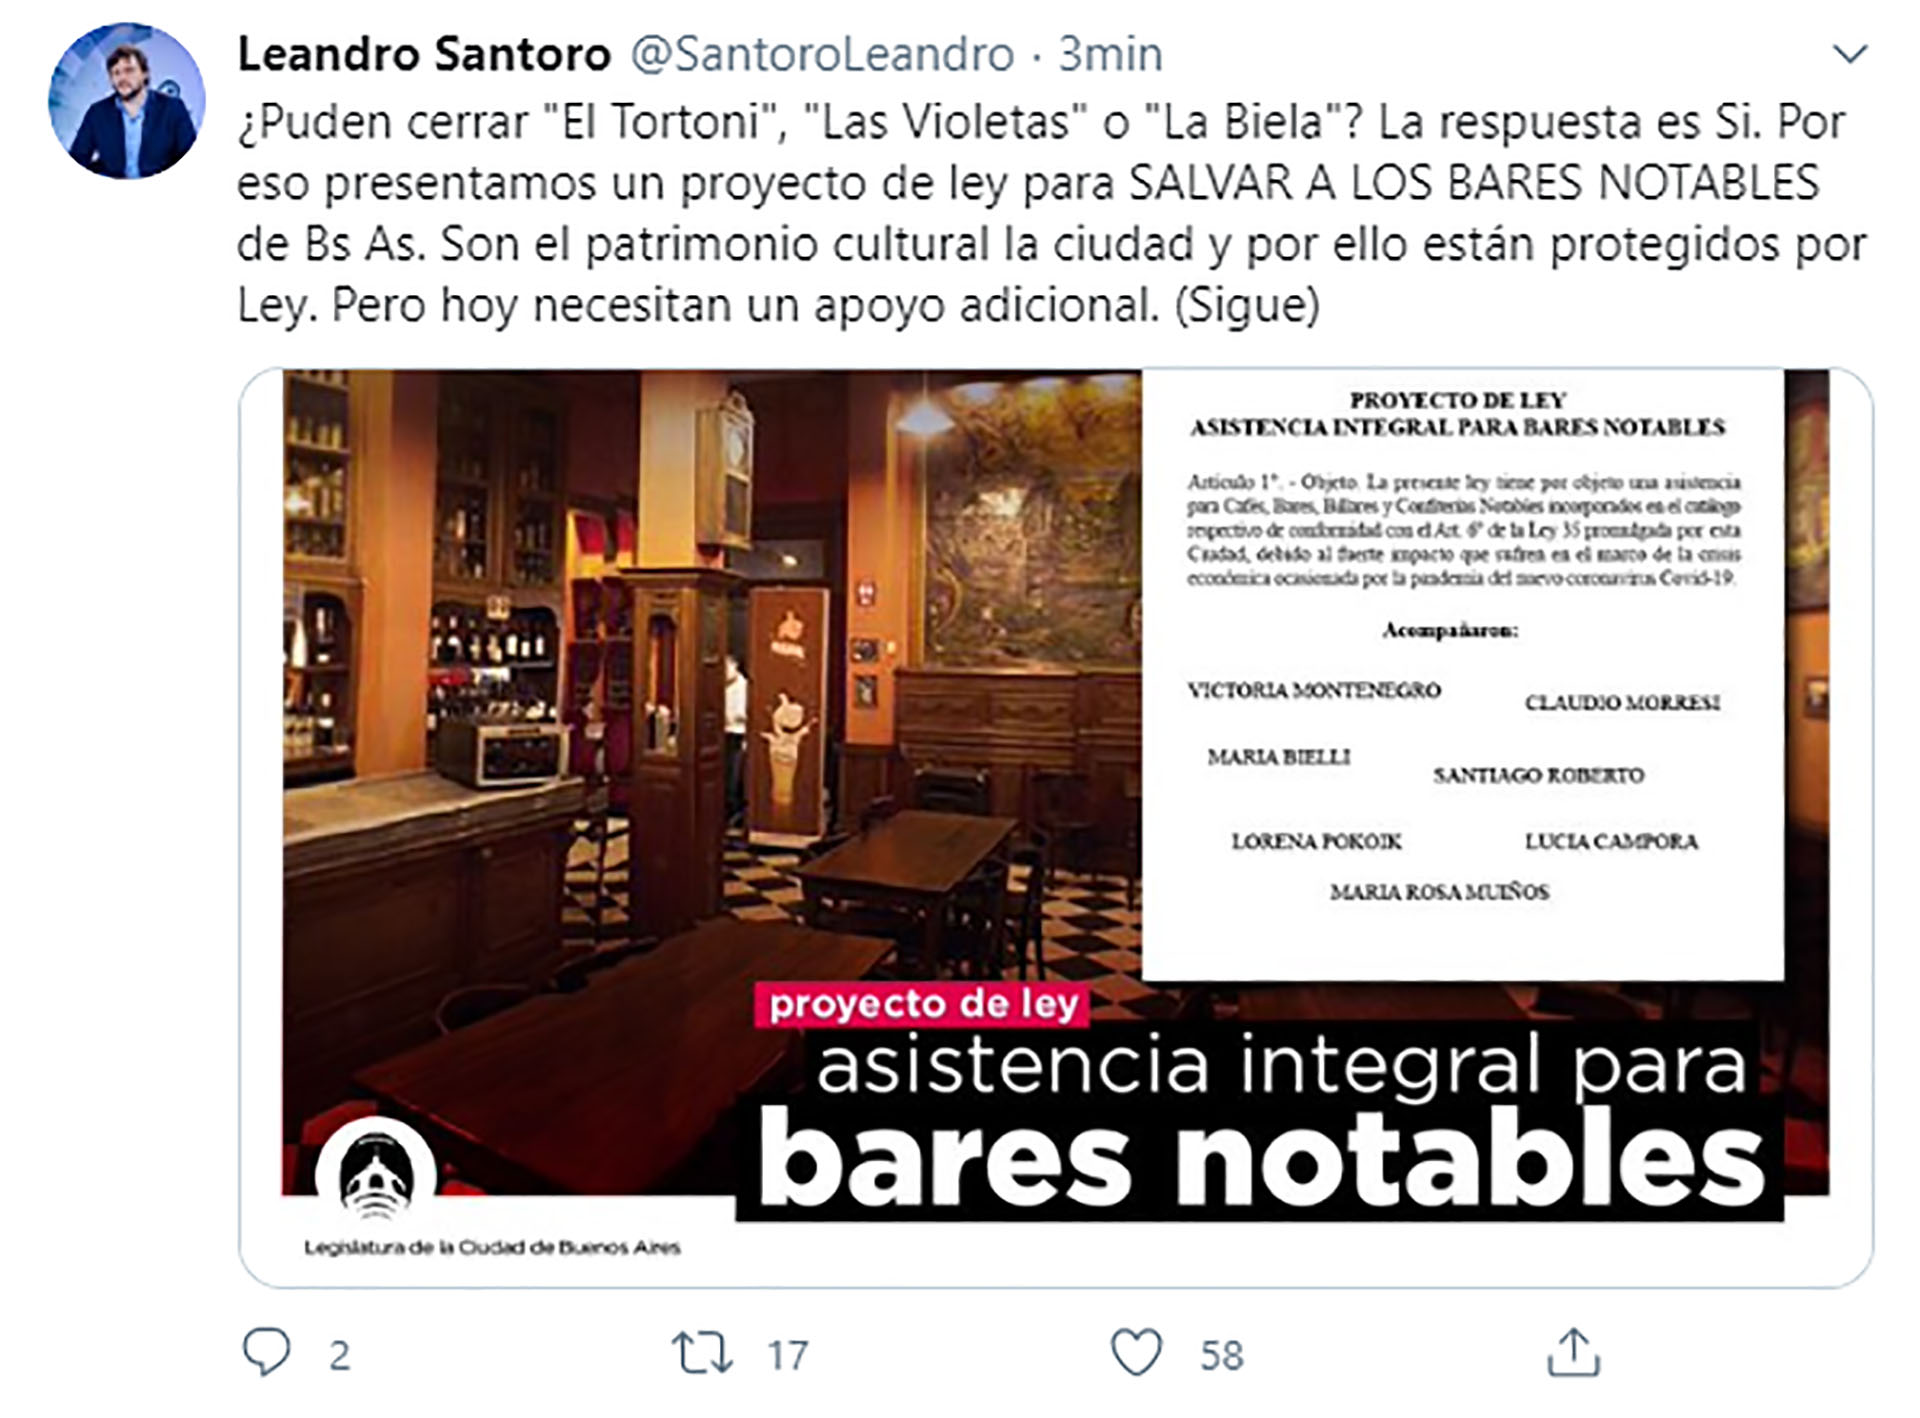 El diputado Leandro Santoro decidió poner en marcha un proyecto de ley para brindar asistencia integral a los bares notables porteños.